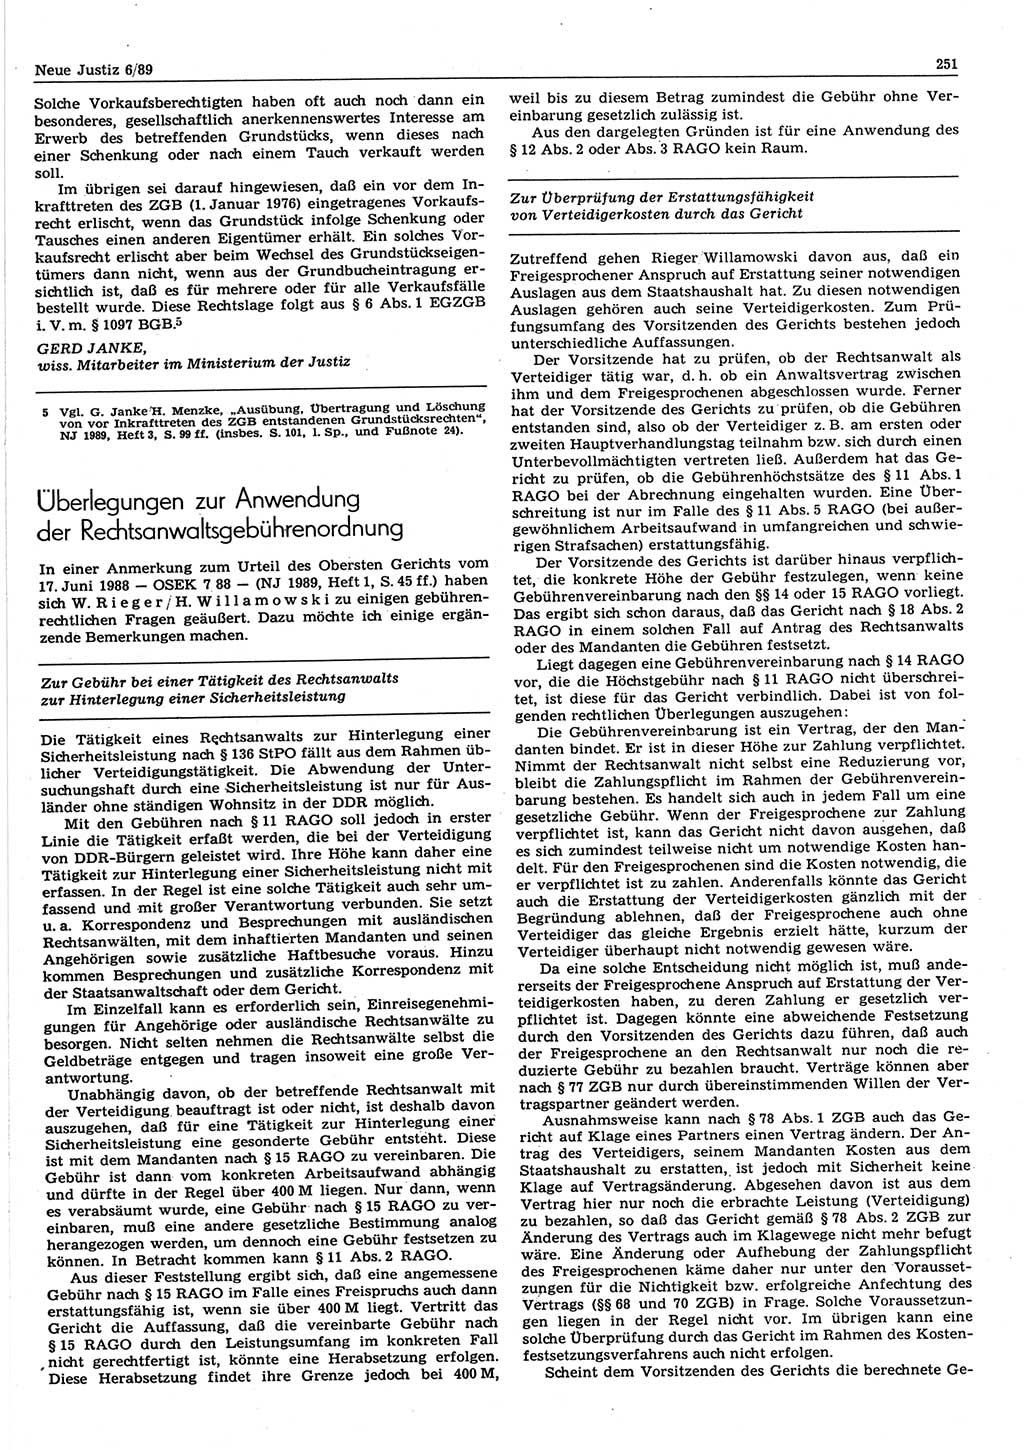 Neue Justiz (NJ), Zeitschrift für sozialistisches Recht und Gesetzlichkeit [Deutsche Demokratische Republik (DDR)], 43. Jahrgang 1989, Seite 251 (NJ DDR 1989, S. 251)